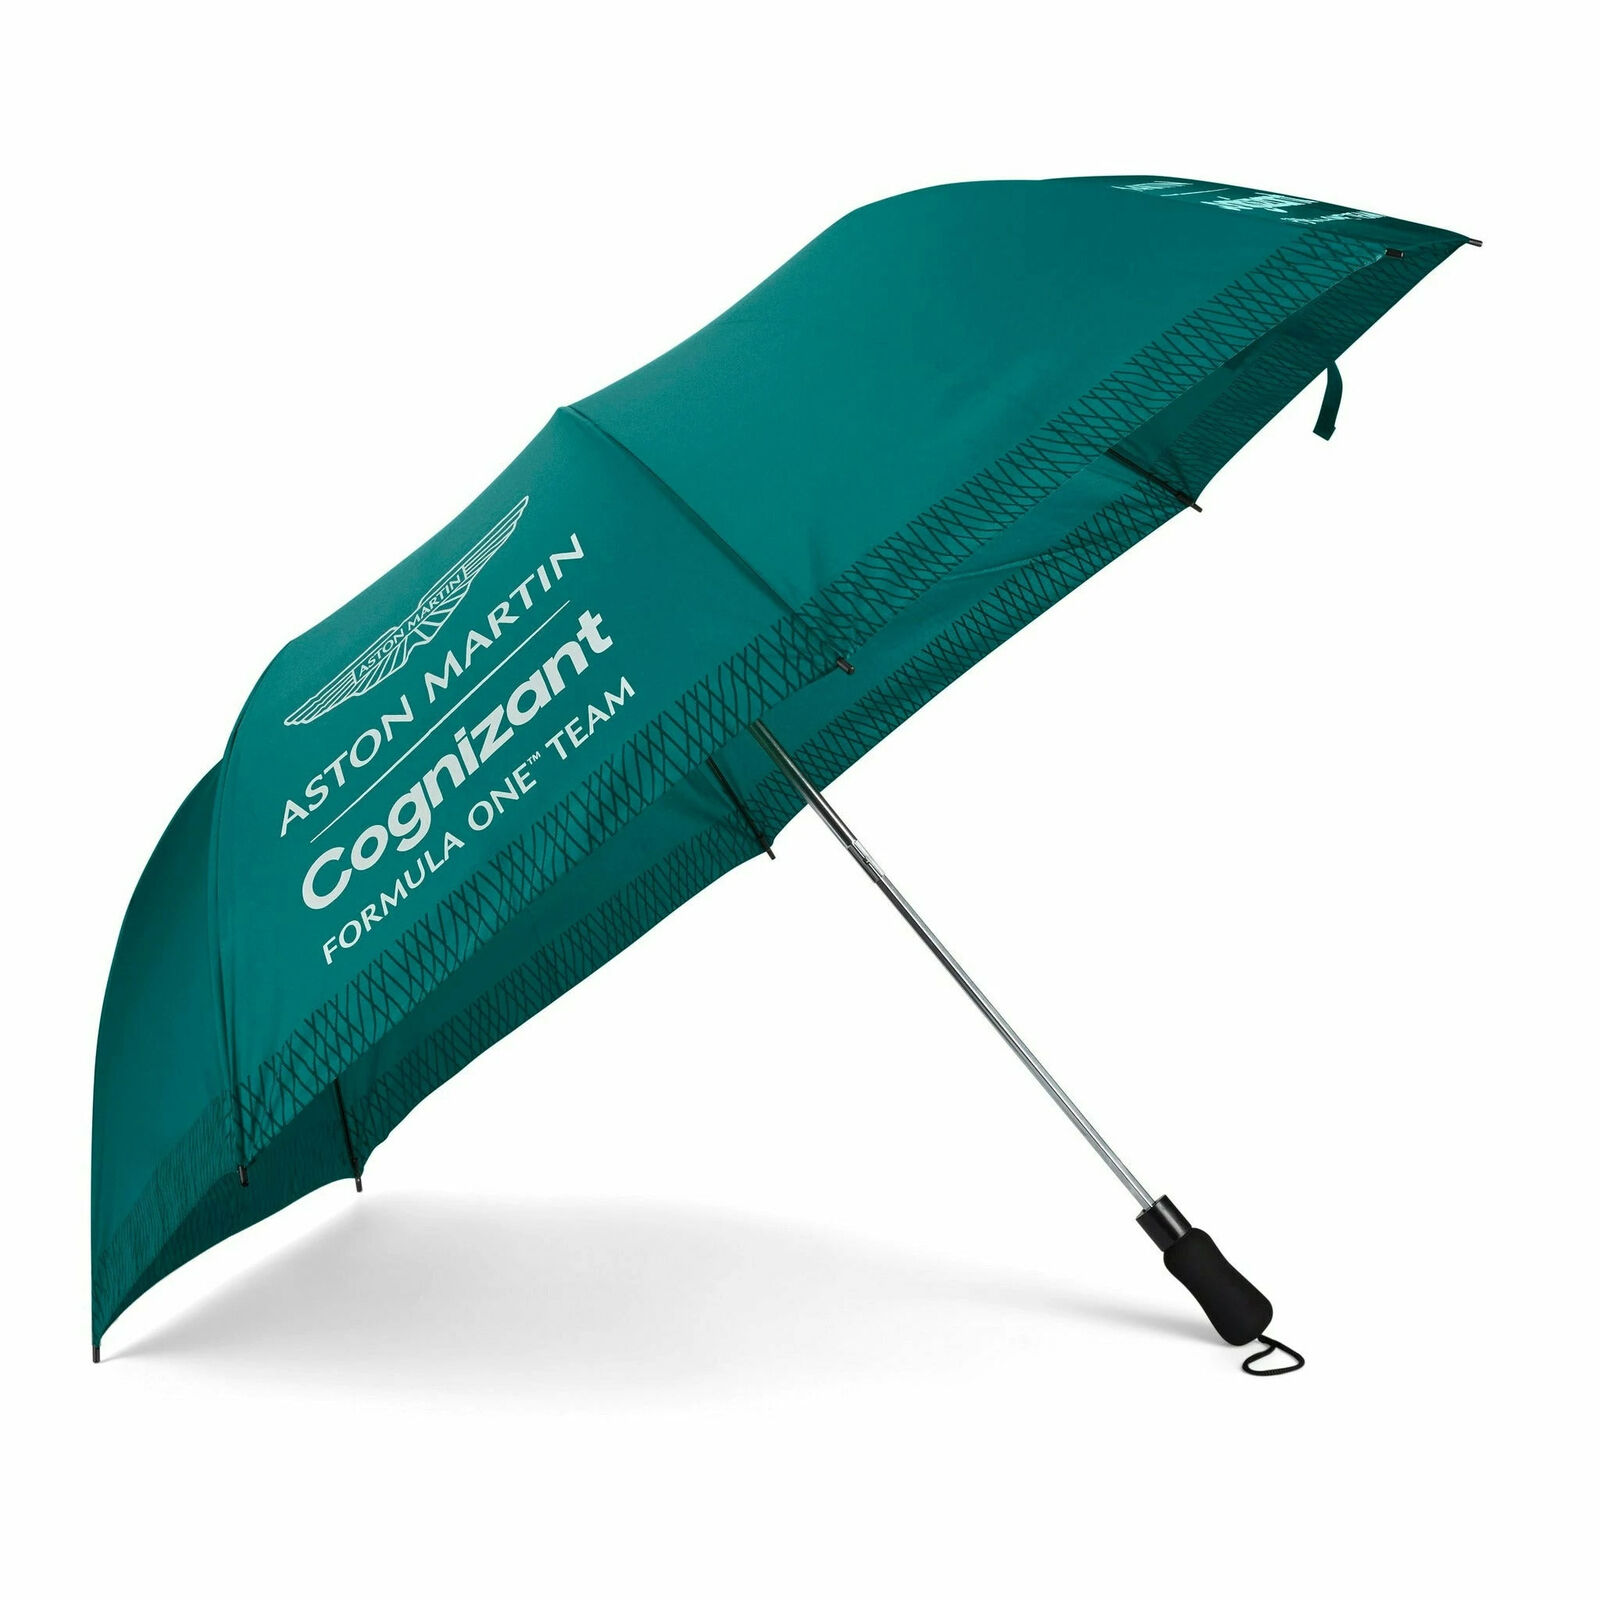 消費税無し 送料無料 Aston Martin F1 Team Foldable Umbrella アストンマーティン オフィシャル アンブレラ 傘 グリーン 22 Fucoa Cl